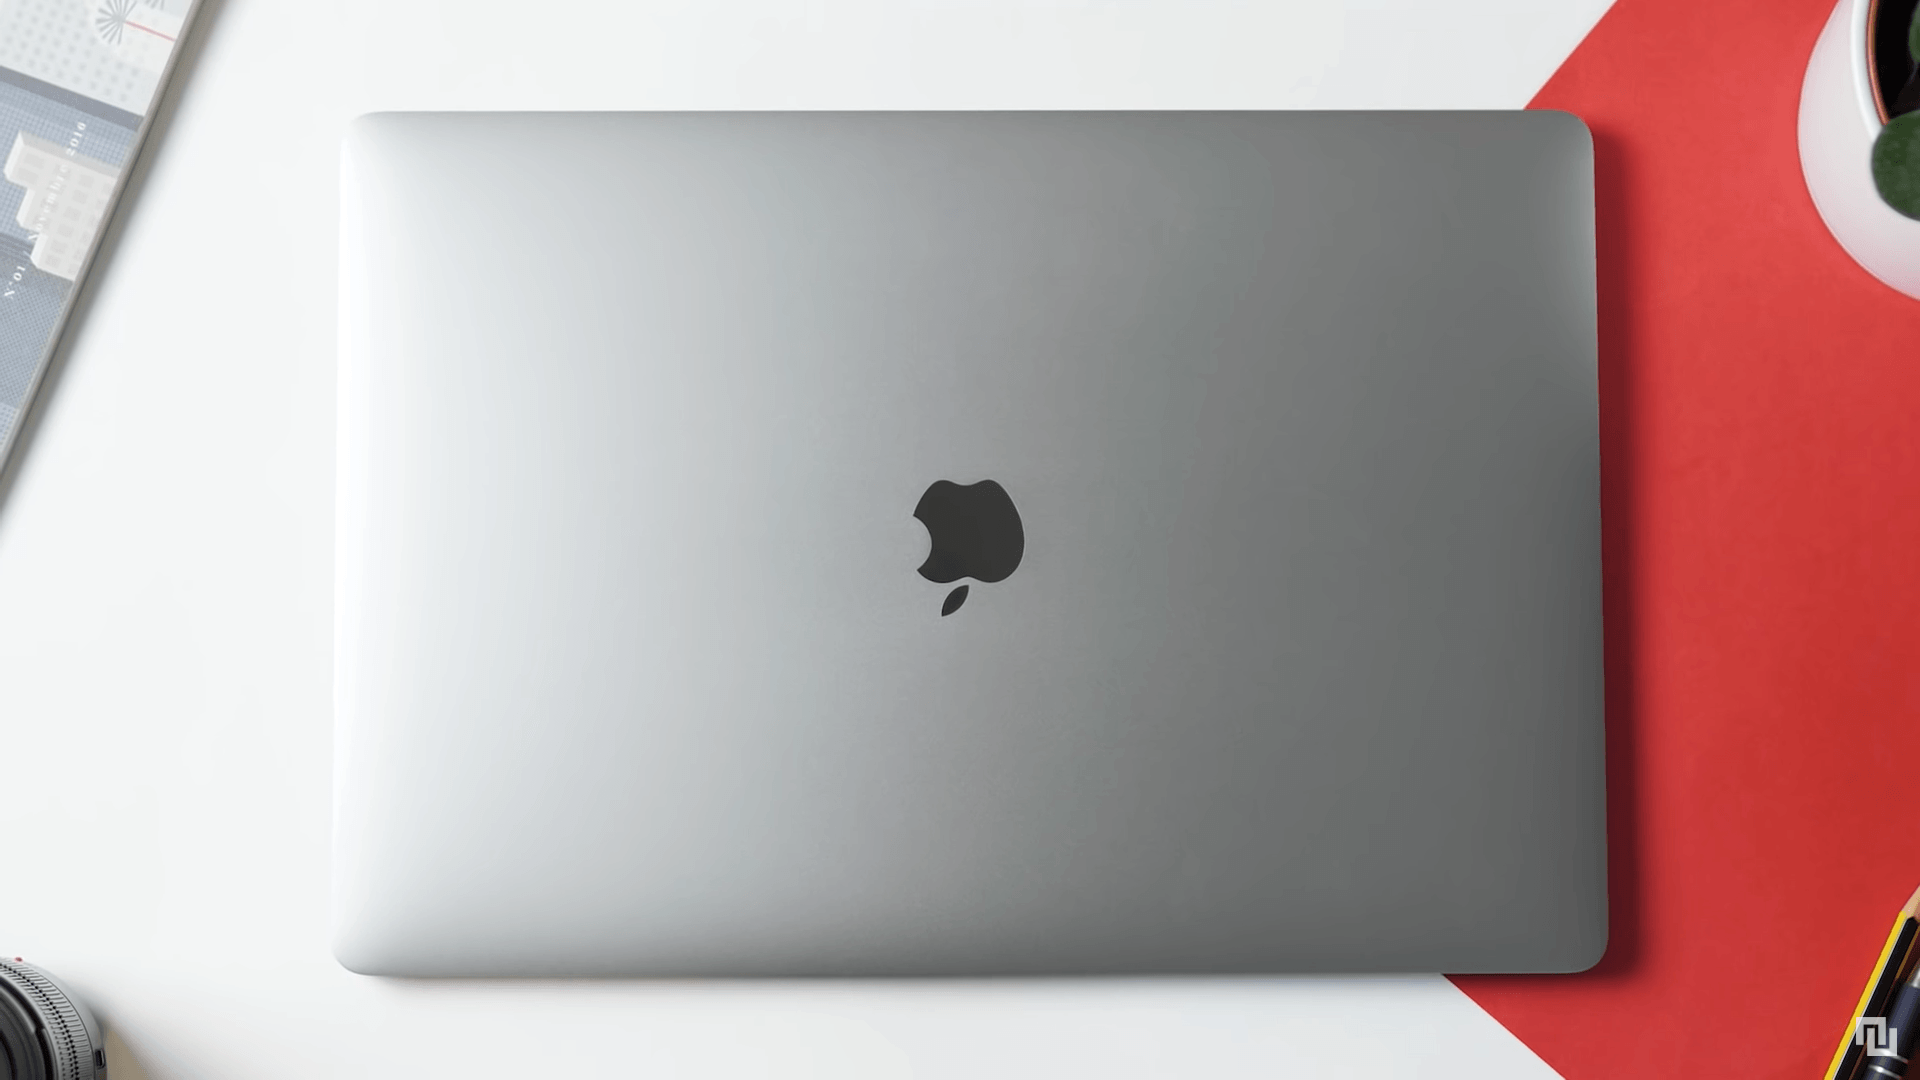 Apple MacBook Pro 16 pouces (16 Go RAM, 512 Go SSD) : meilleur prix, test  et actualités - Les Numériques